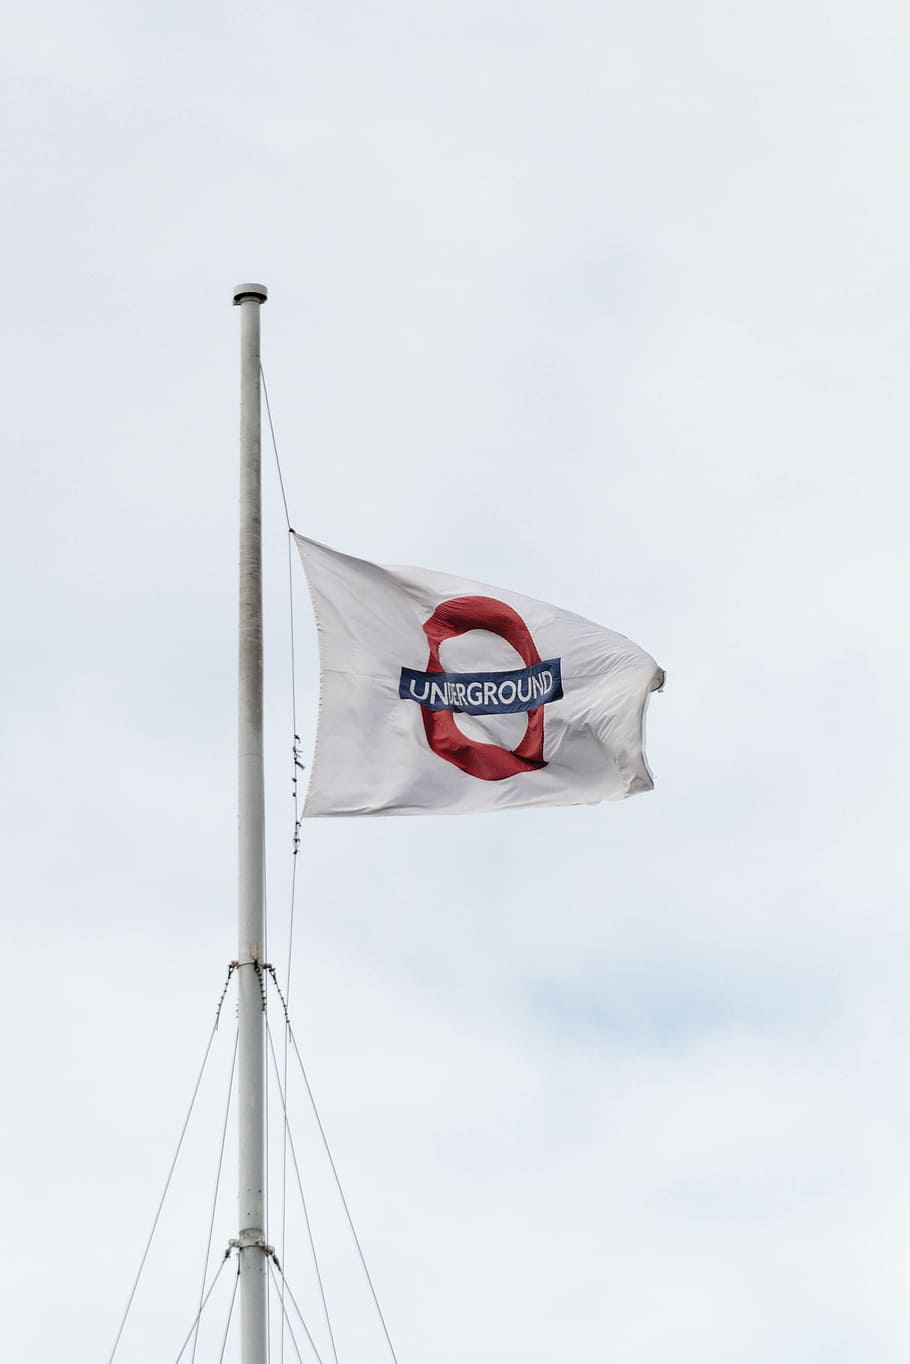 Londres, Reino Unido, -, 20 de agosto de 2017, metro, logotipo, volando, banderas, tomado, bandera